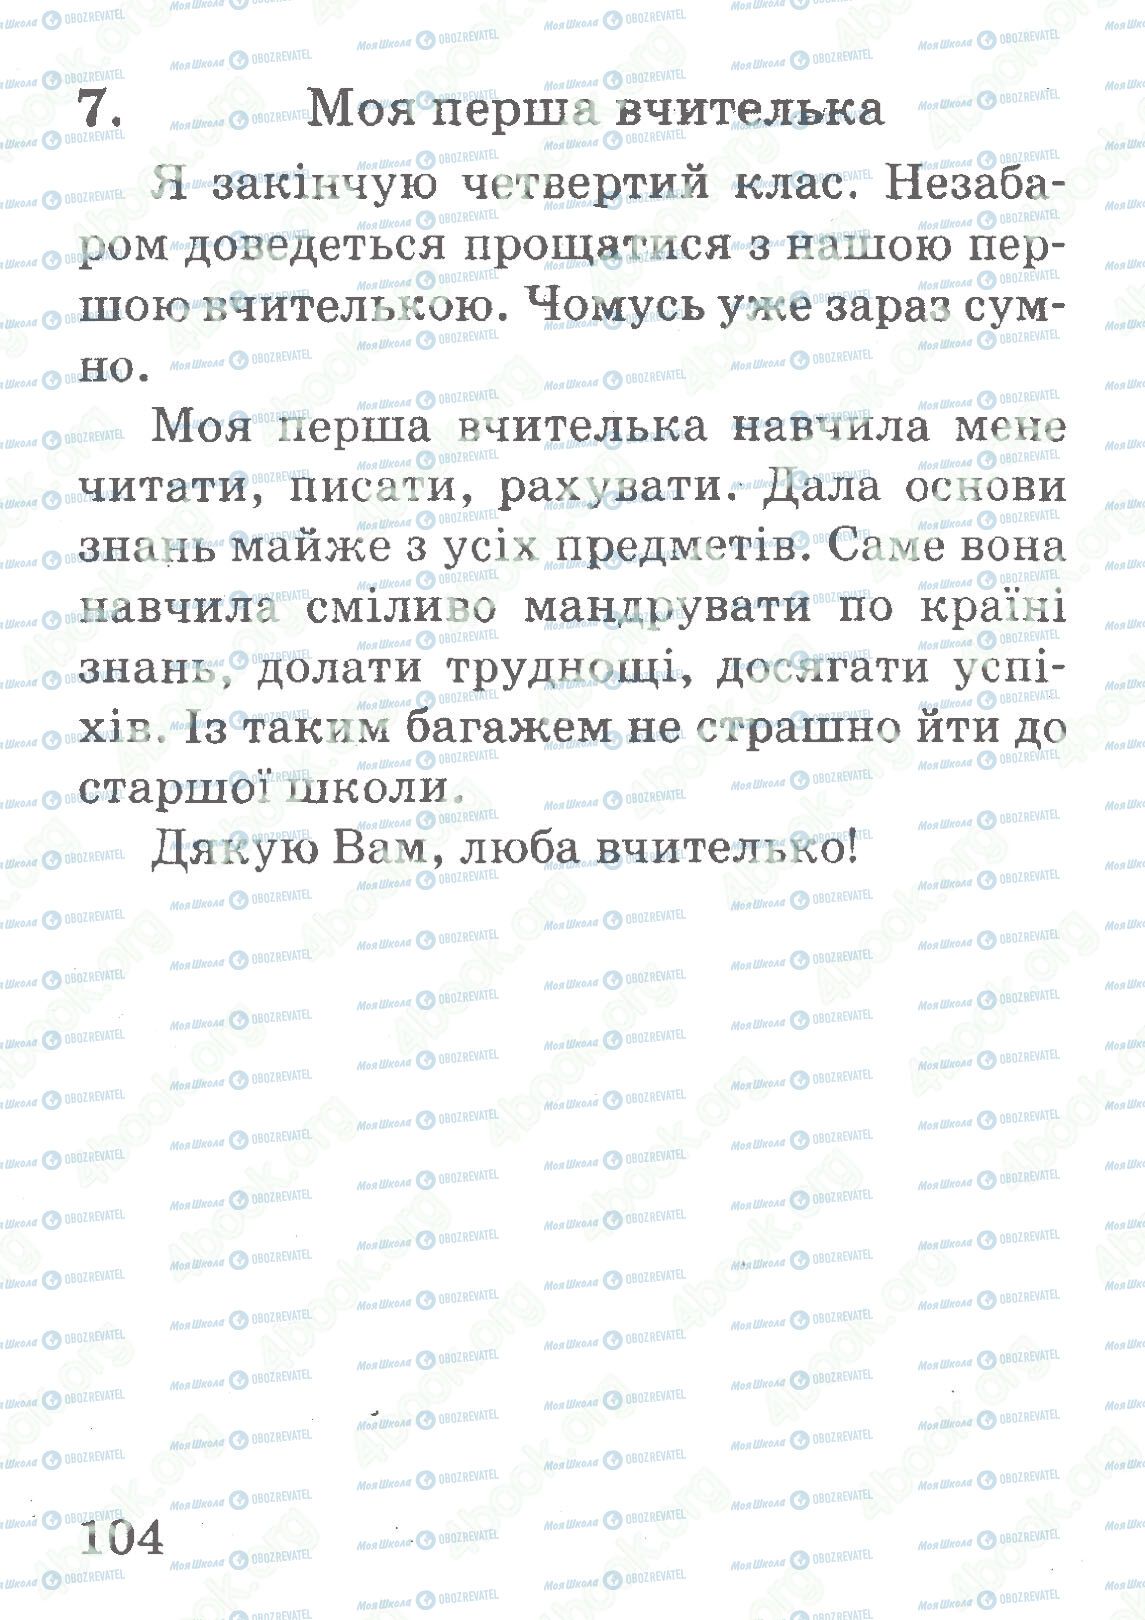 ДПА Укр мова 4 класс страница 104